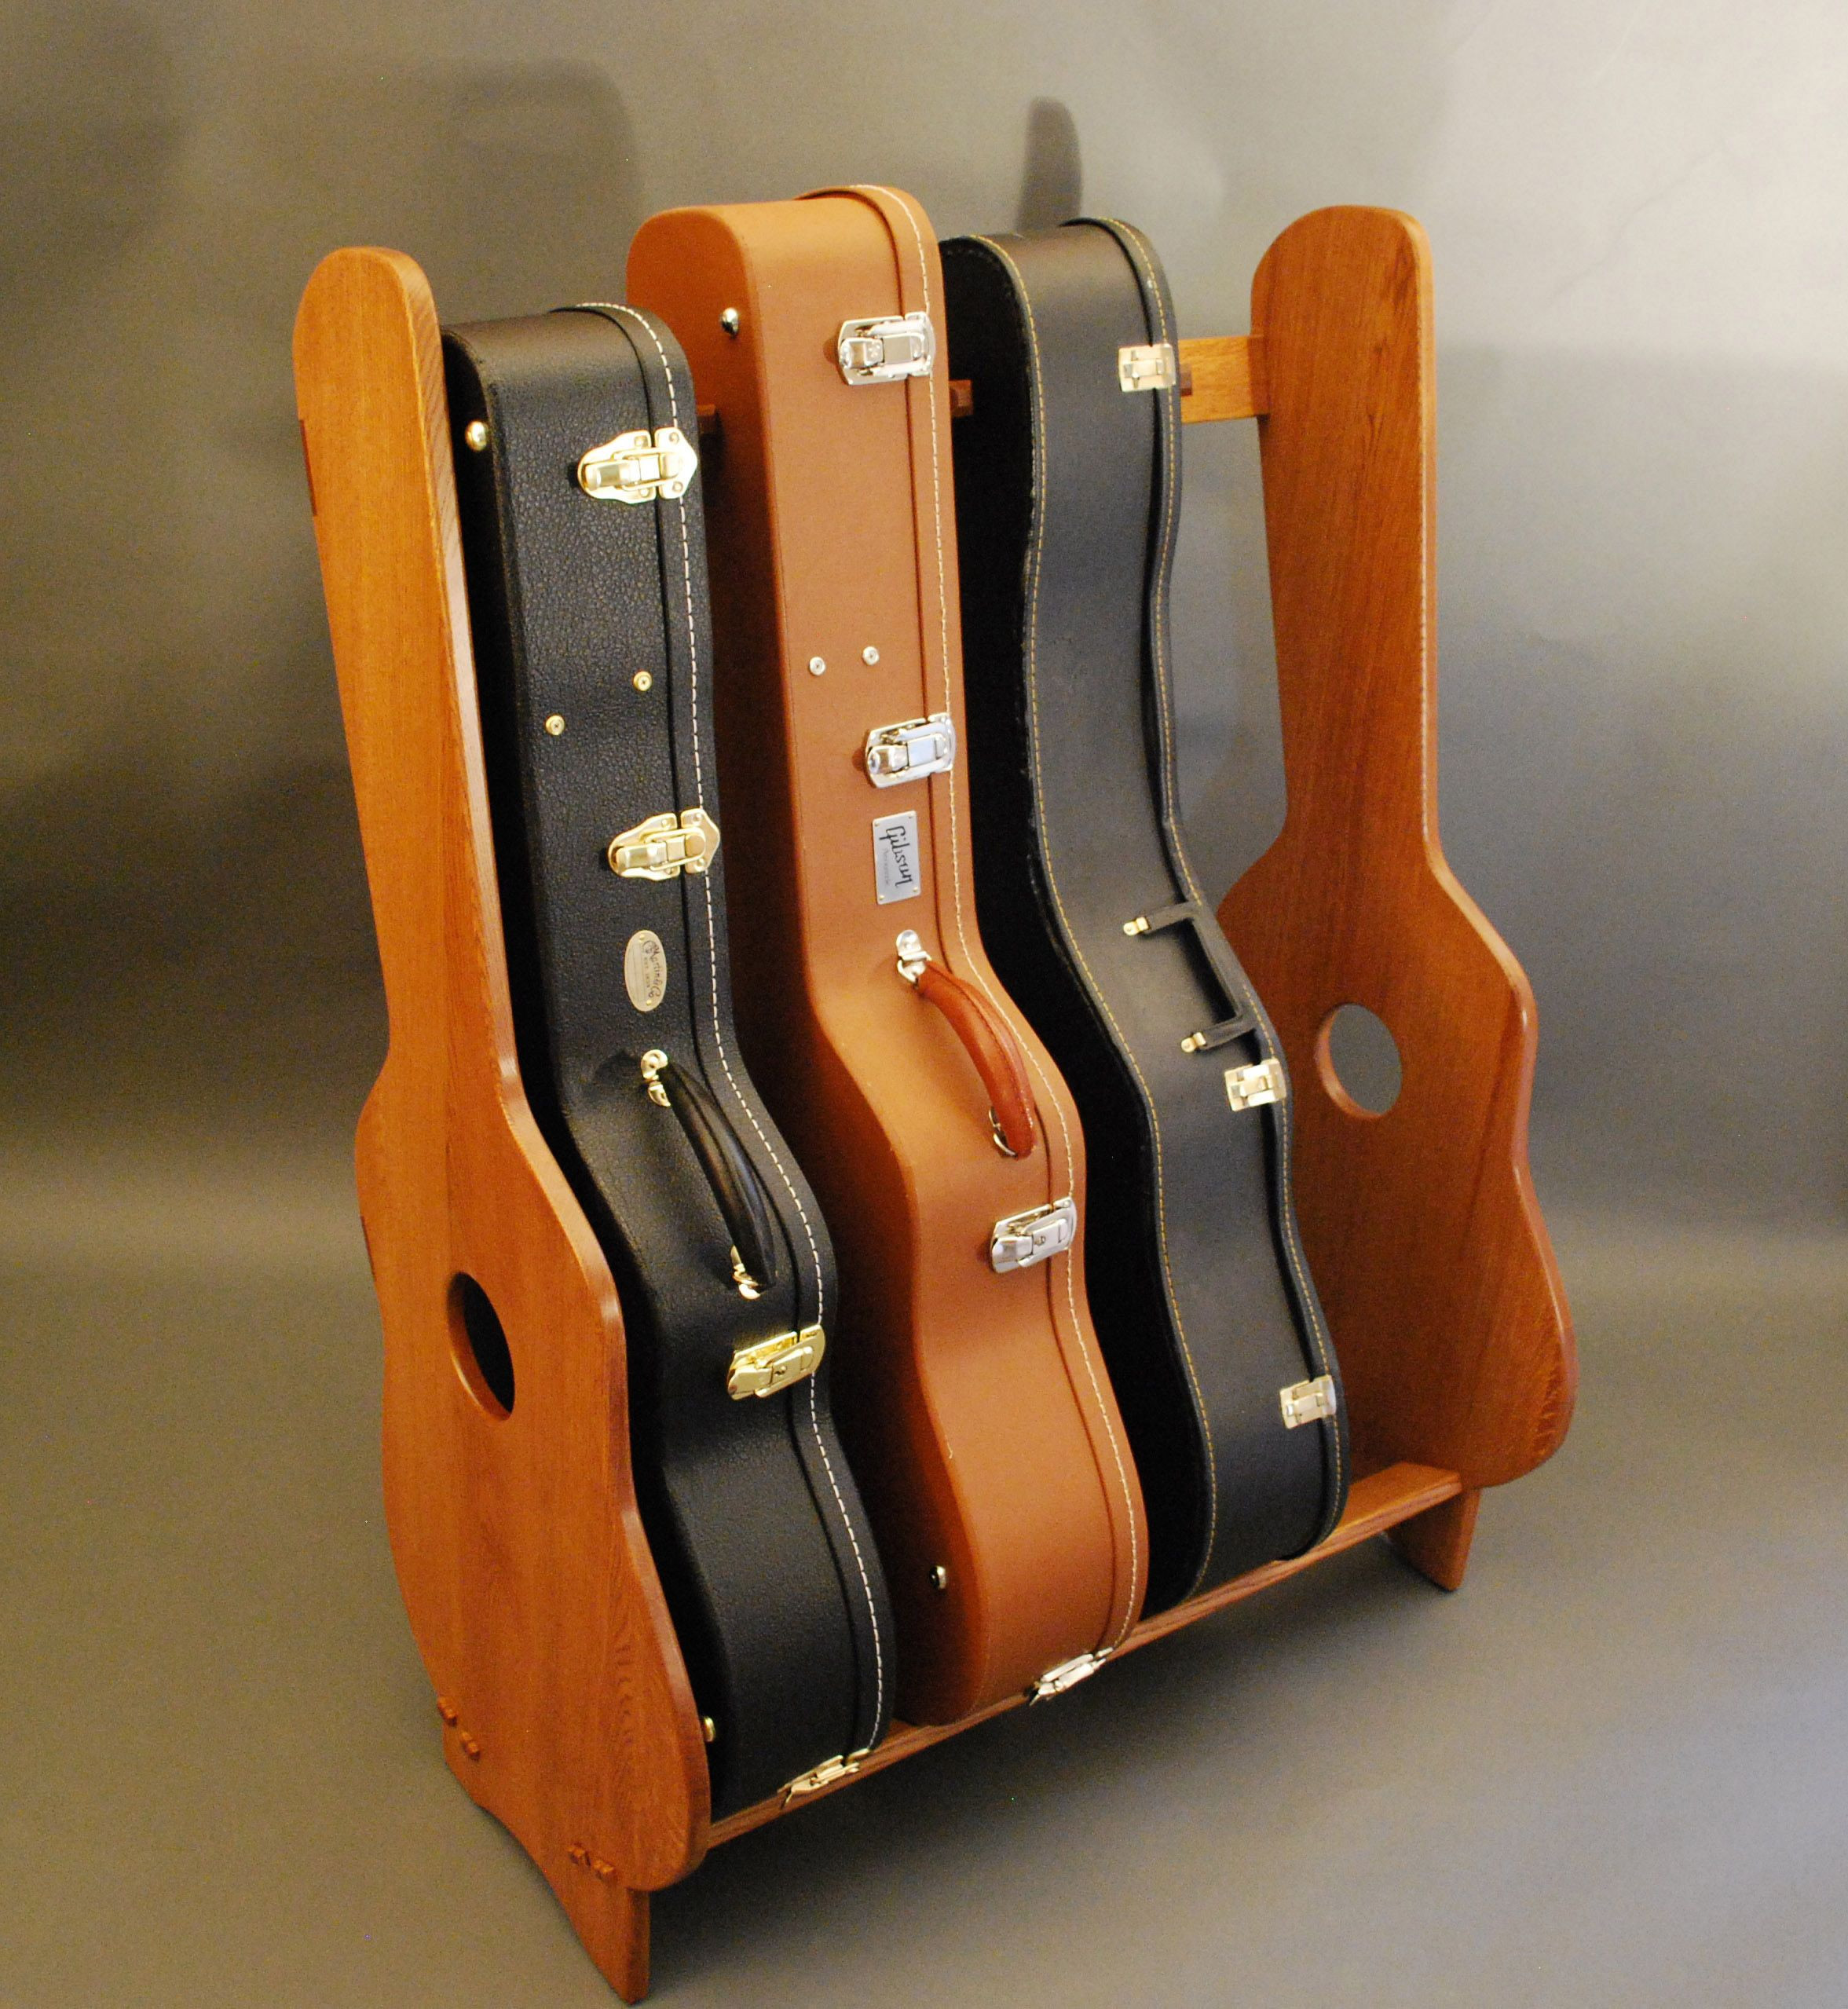 DIY Guitar Case Rack
 Guitar rack